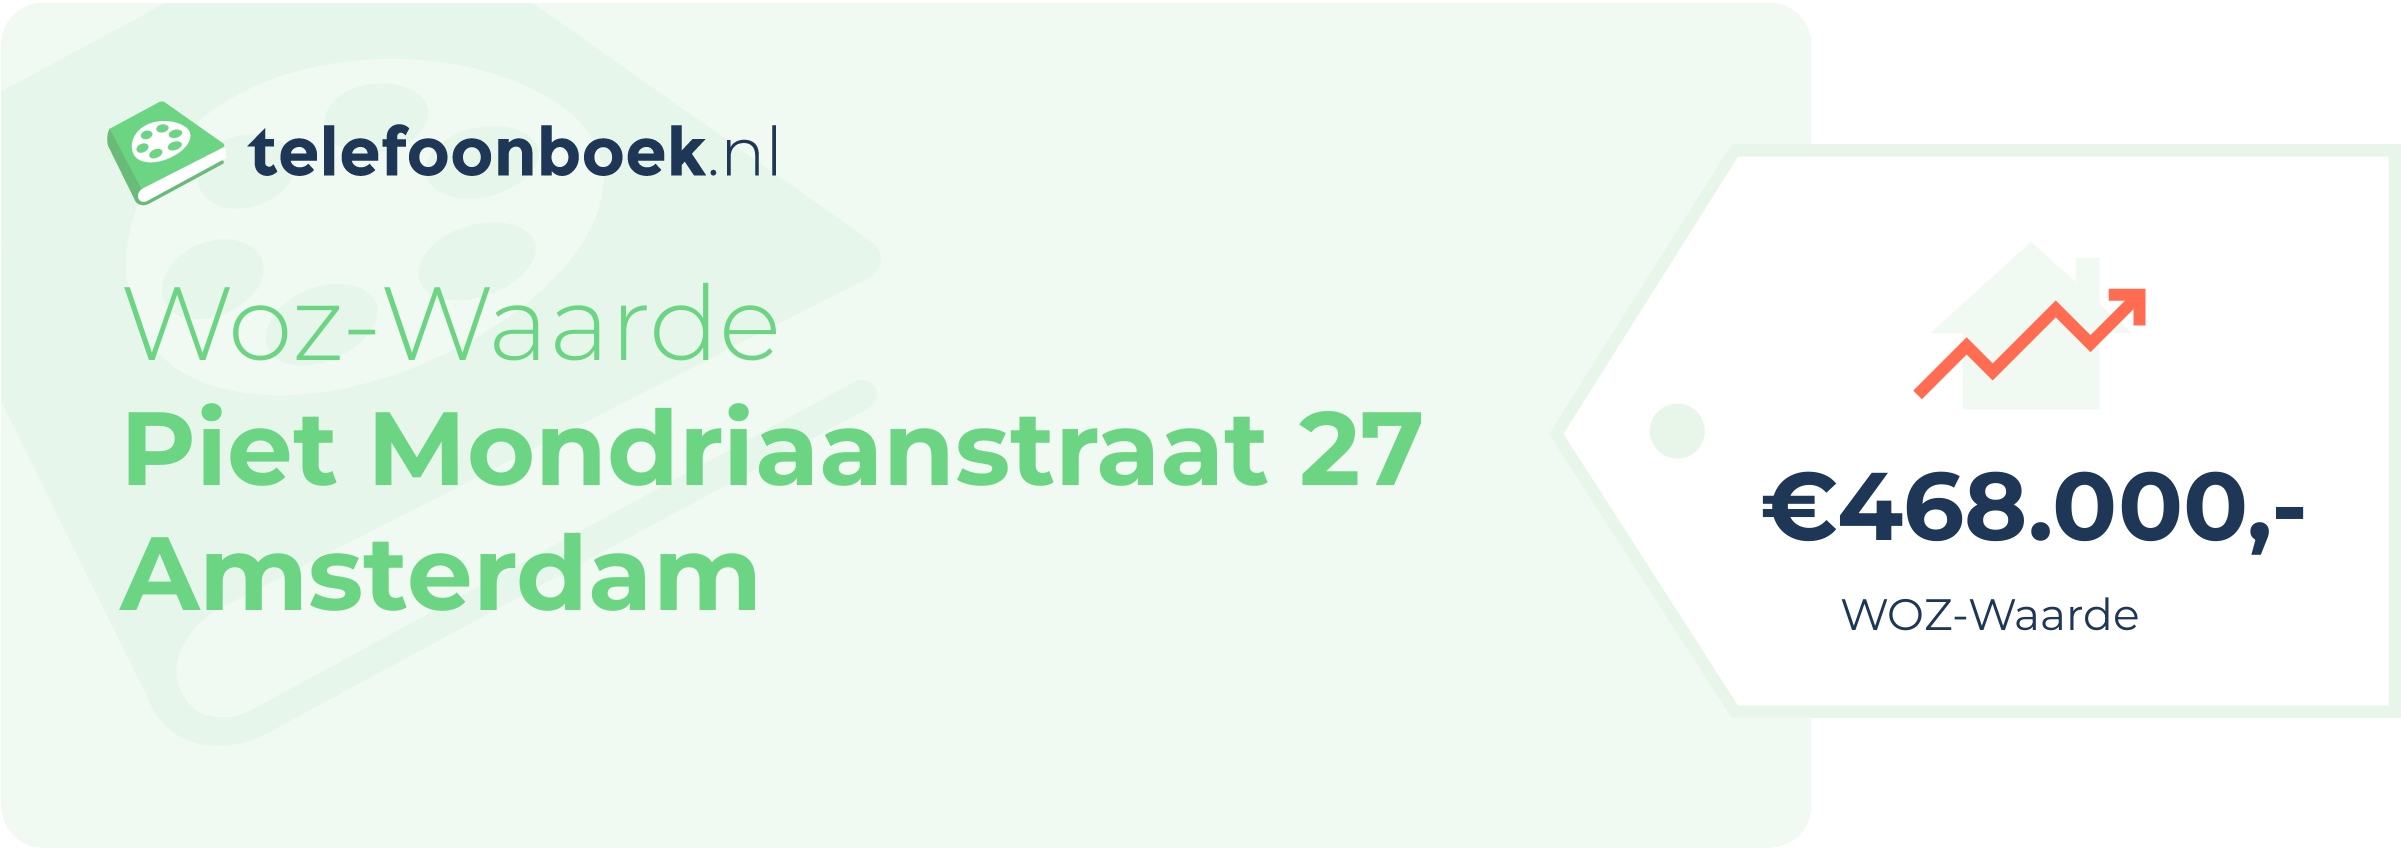 WOZ-waarde Piet Mondriaanstraat 27 Amsterdam